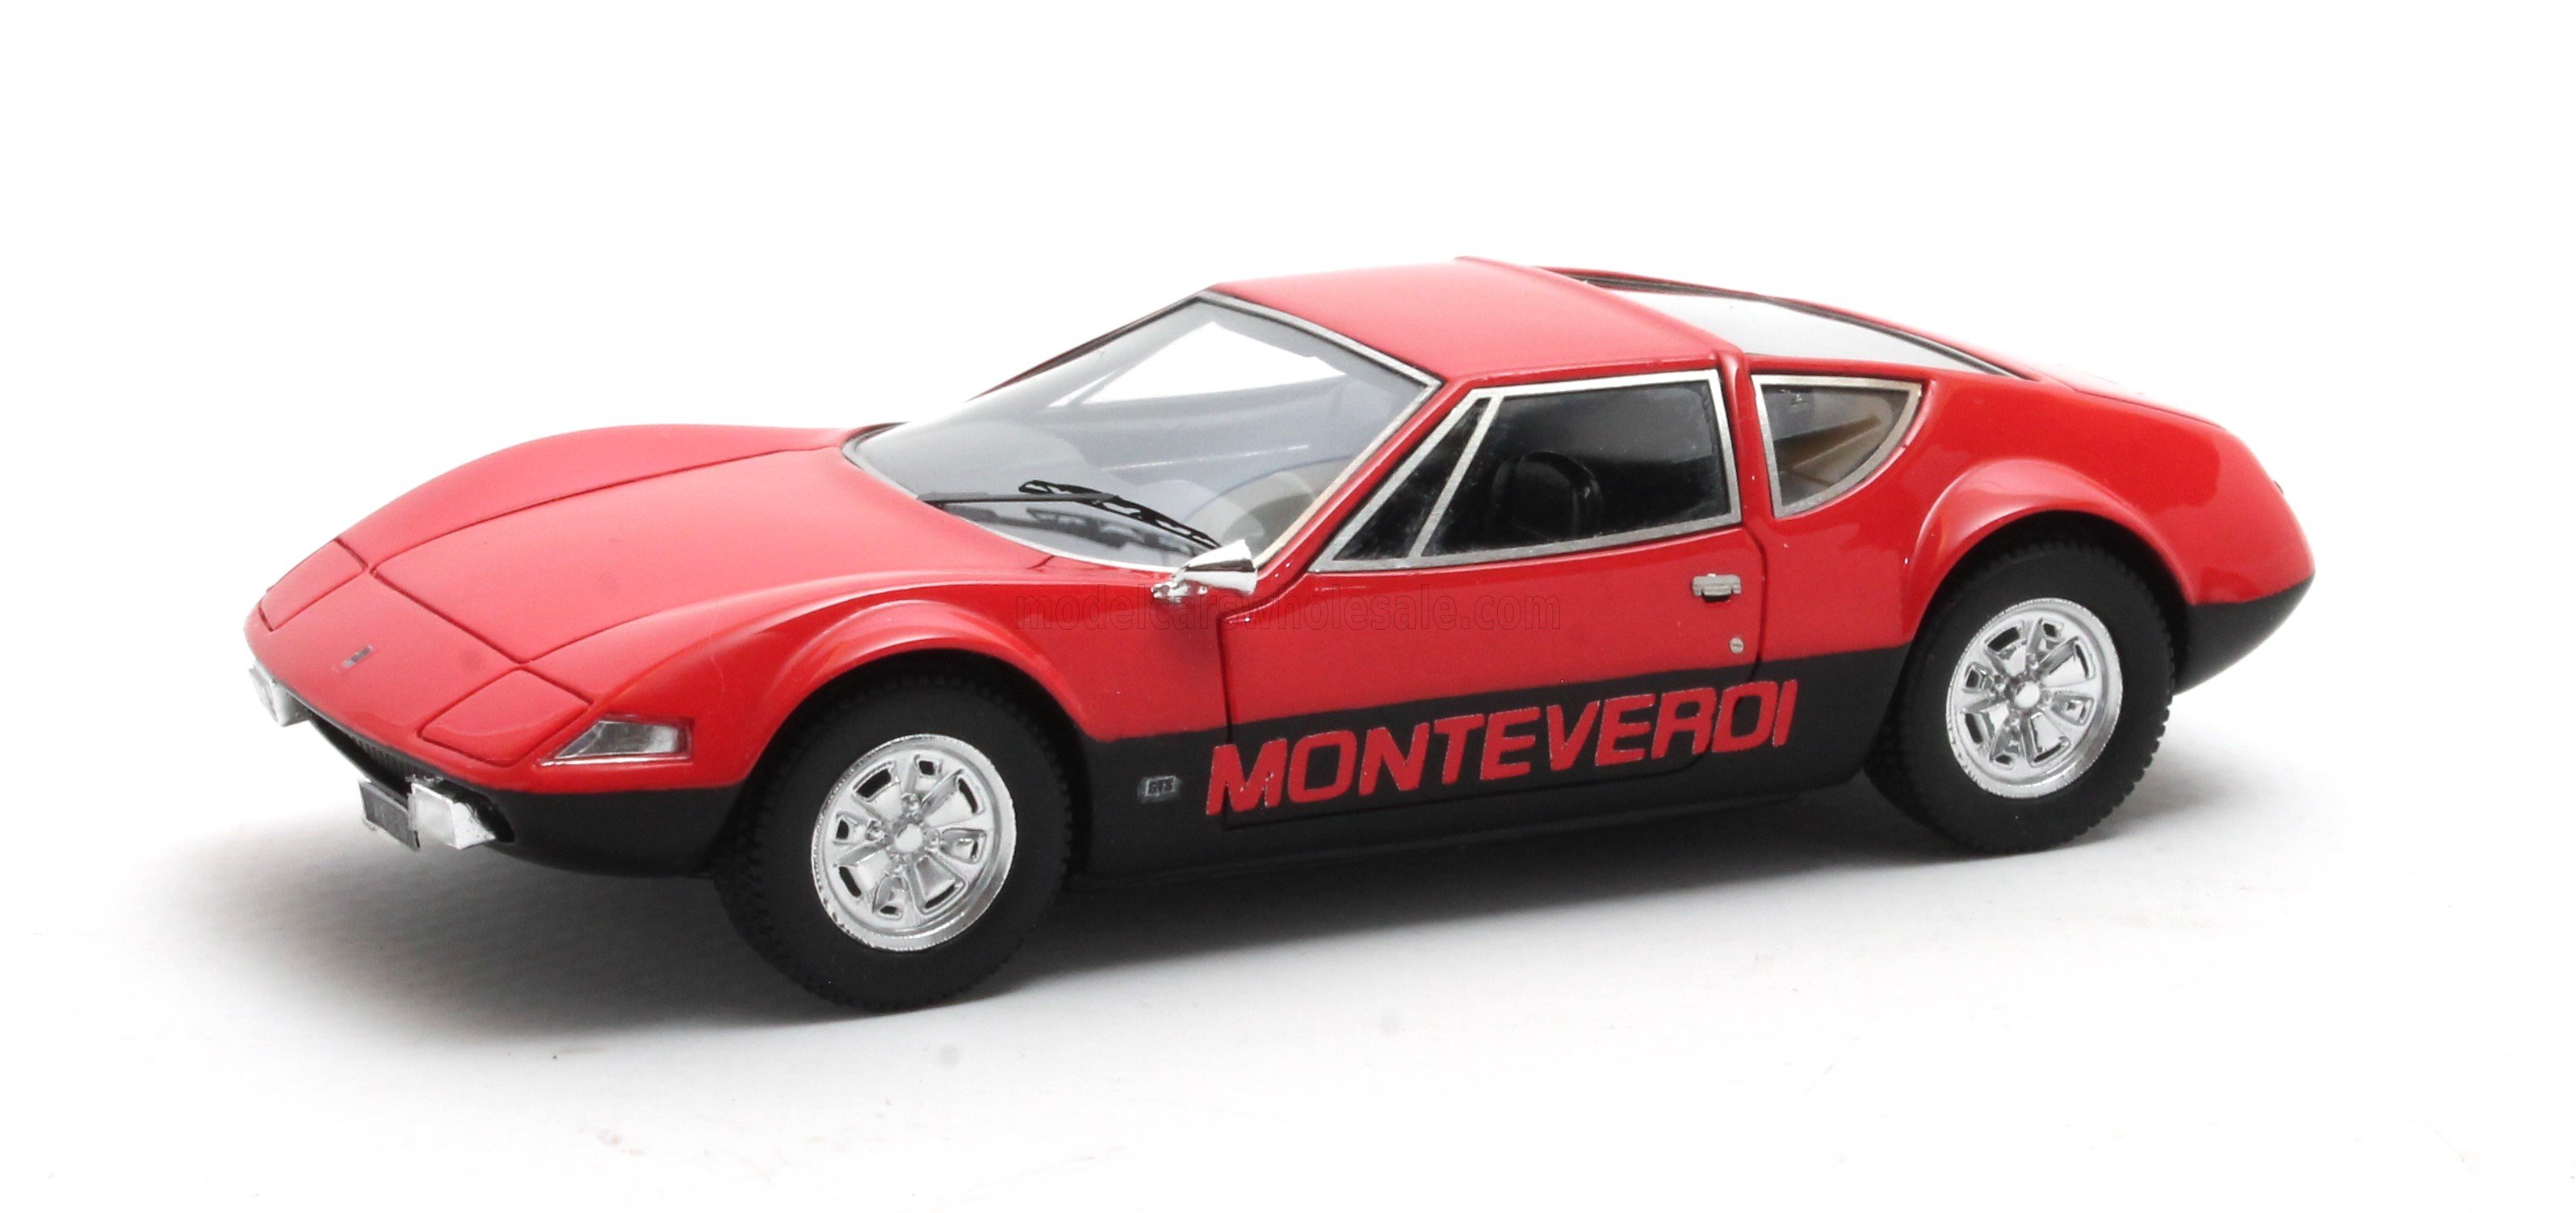 MONTEVERDI - HAI 450 GTS 1973